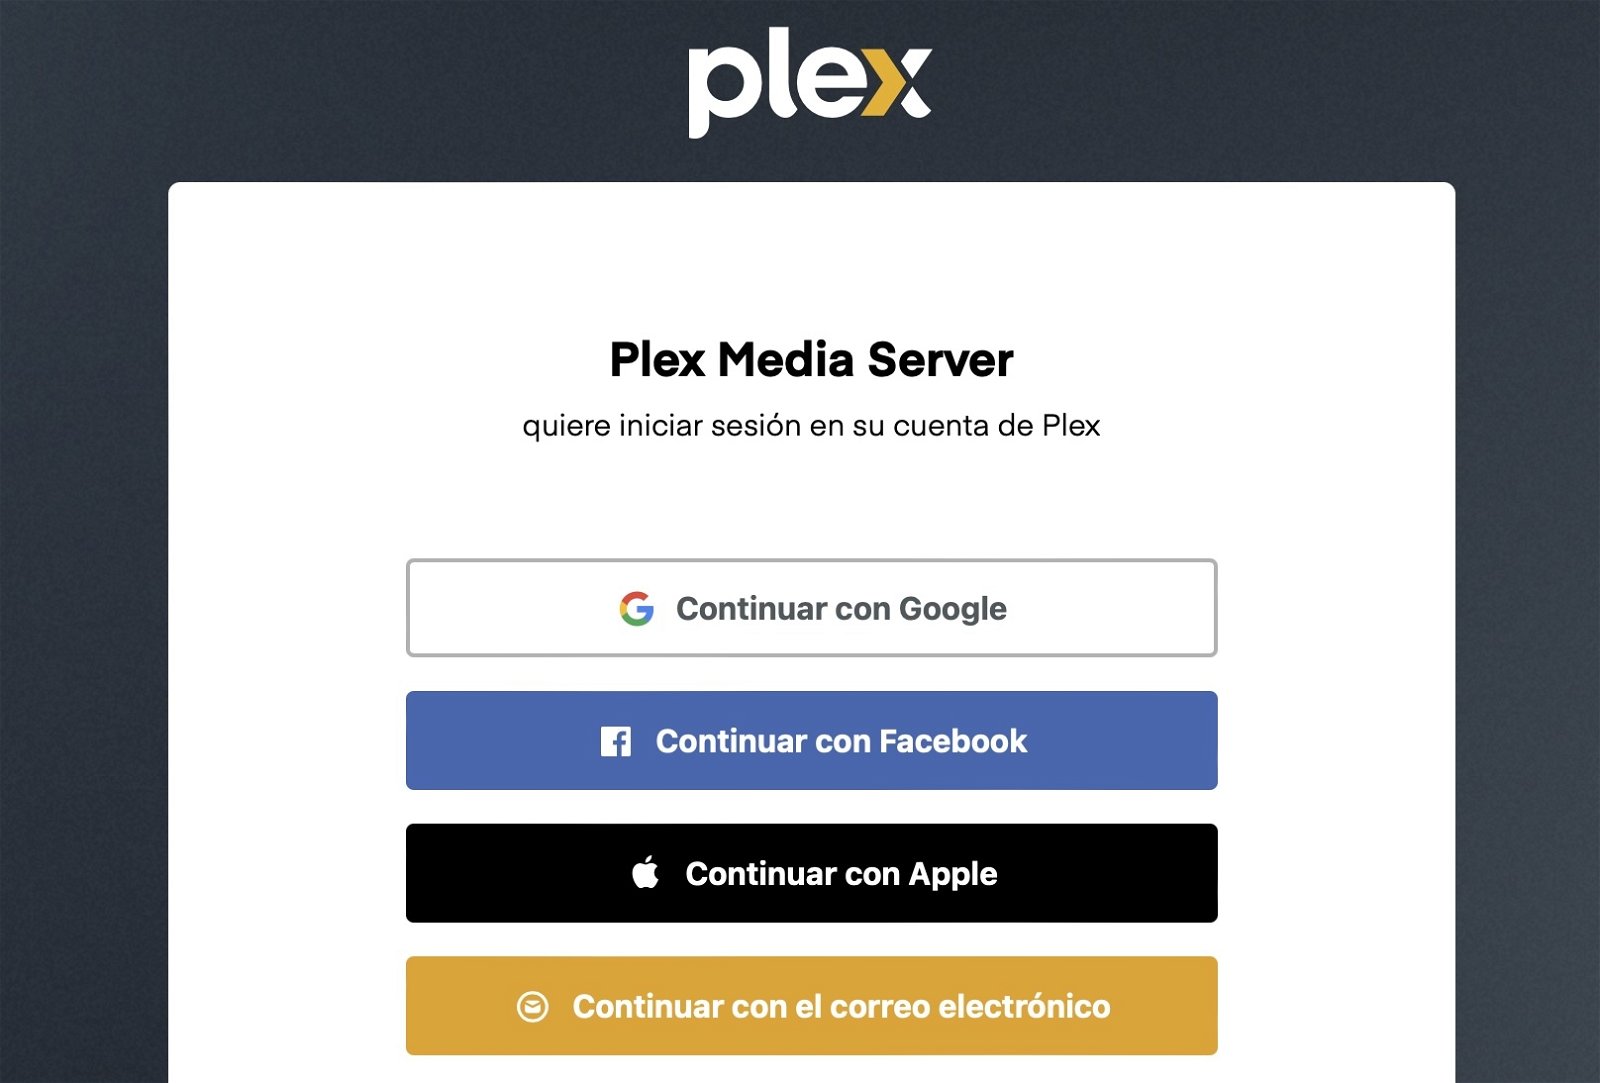 Plex: qué es, cómo funciona y cómo puedes acceder